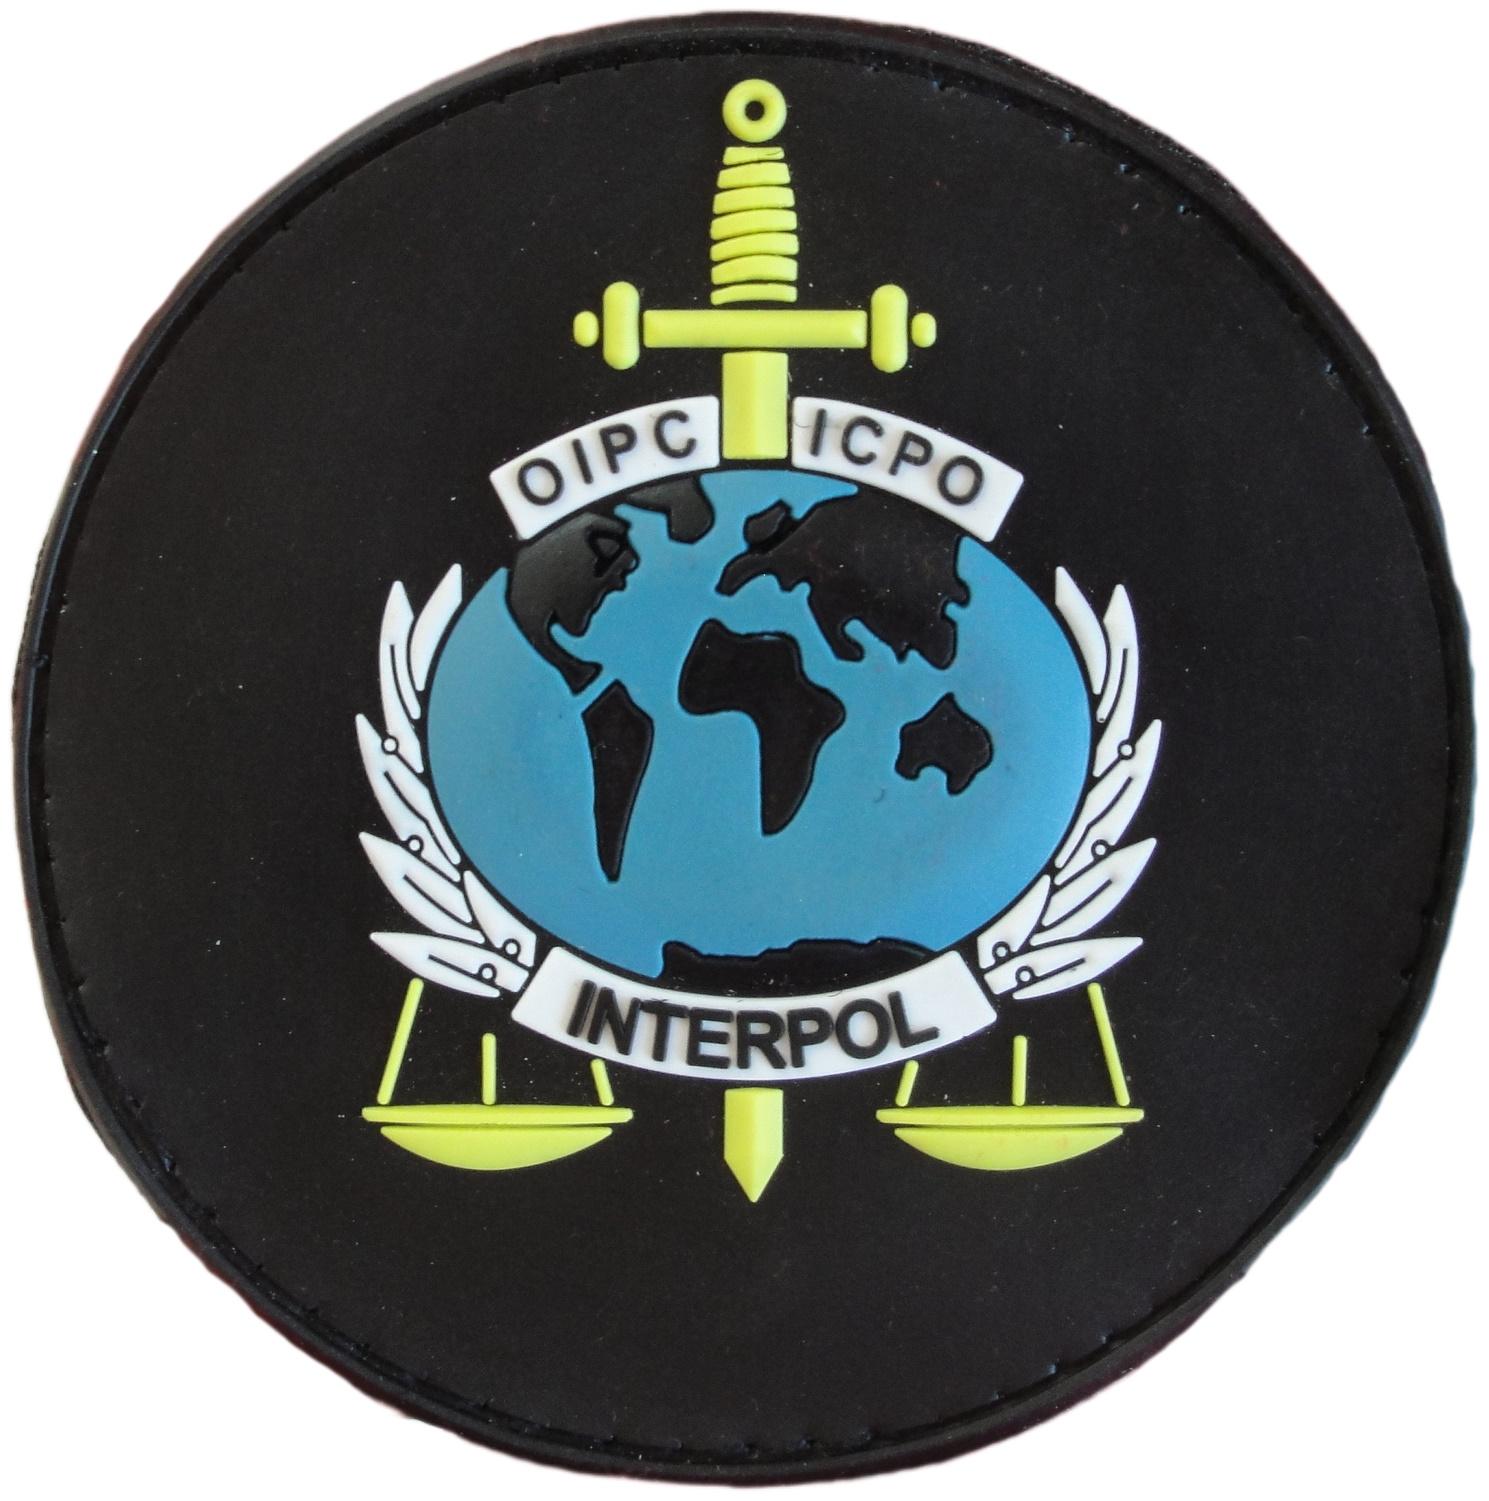 Policía Interpol OIPC ICPO Organización Internacional Police Criminal parche insignia emblema distintivo